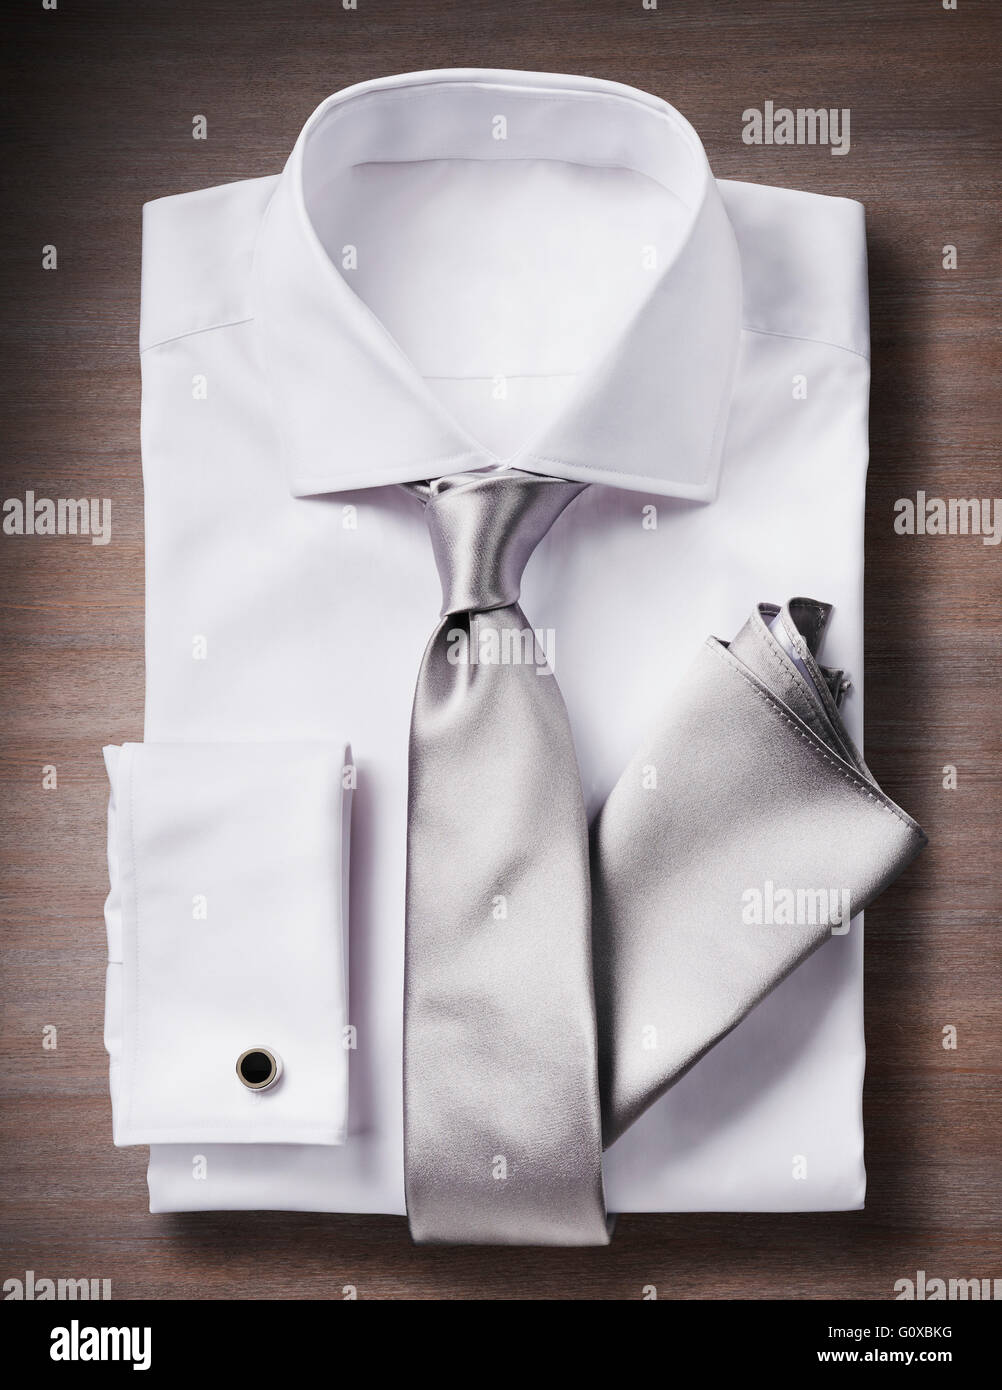 Camisa blanca con una corbata, pañuelo y de Foto de estudio sobre fondo de madera Fotografía stock - Alamy